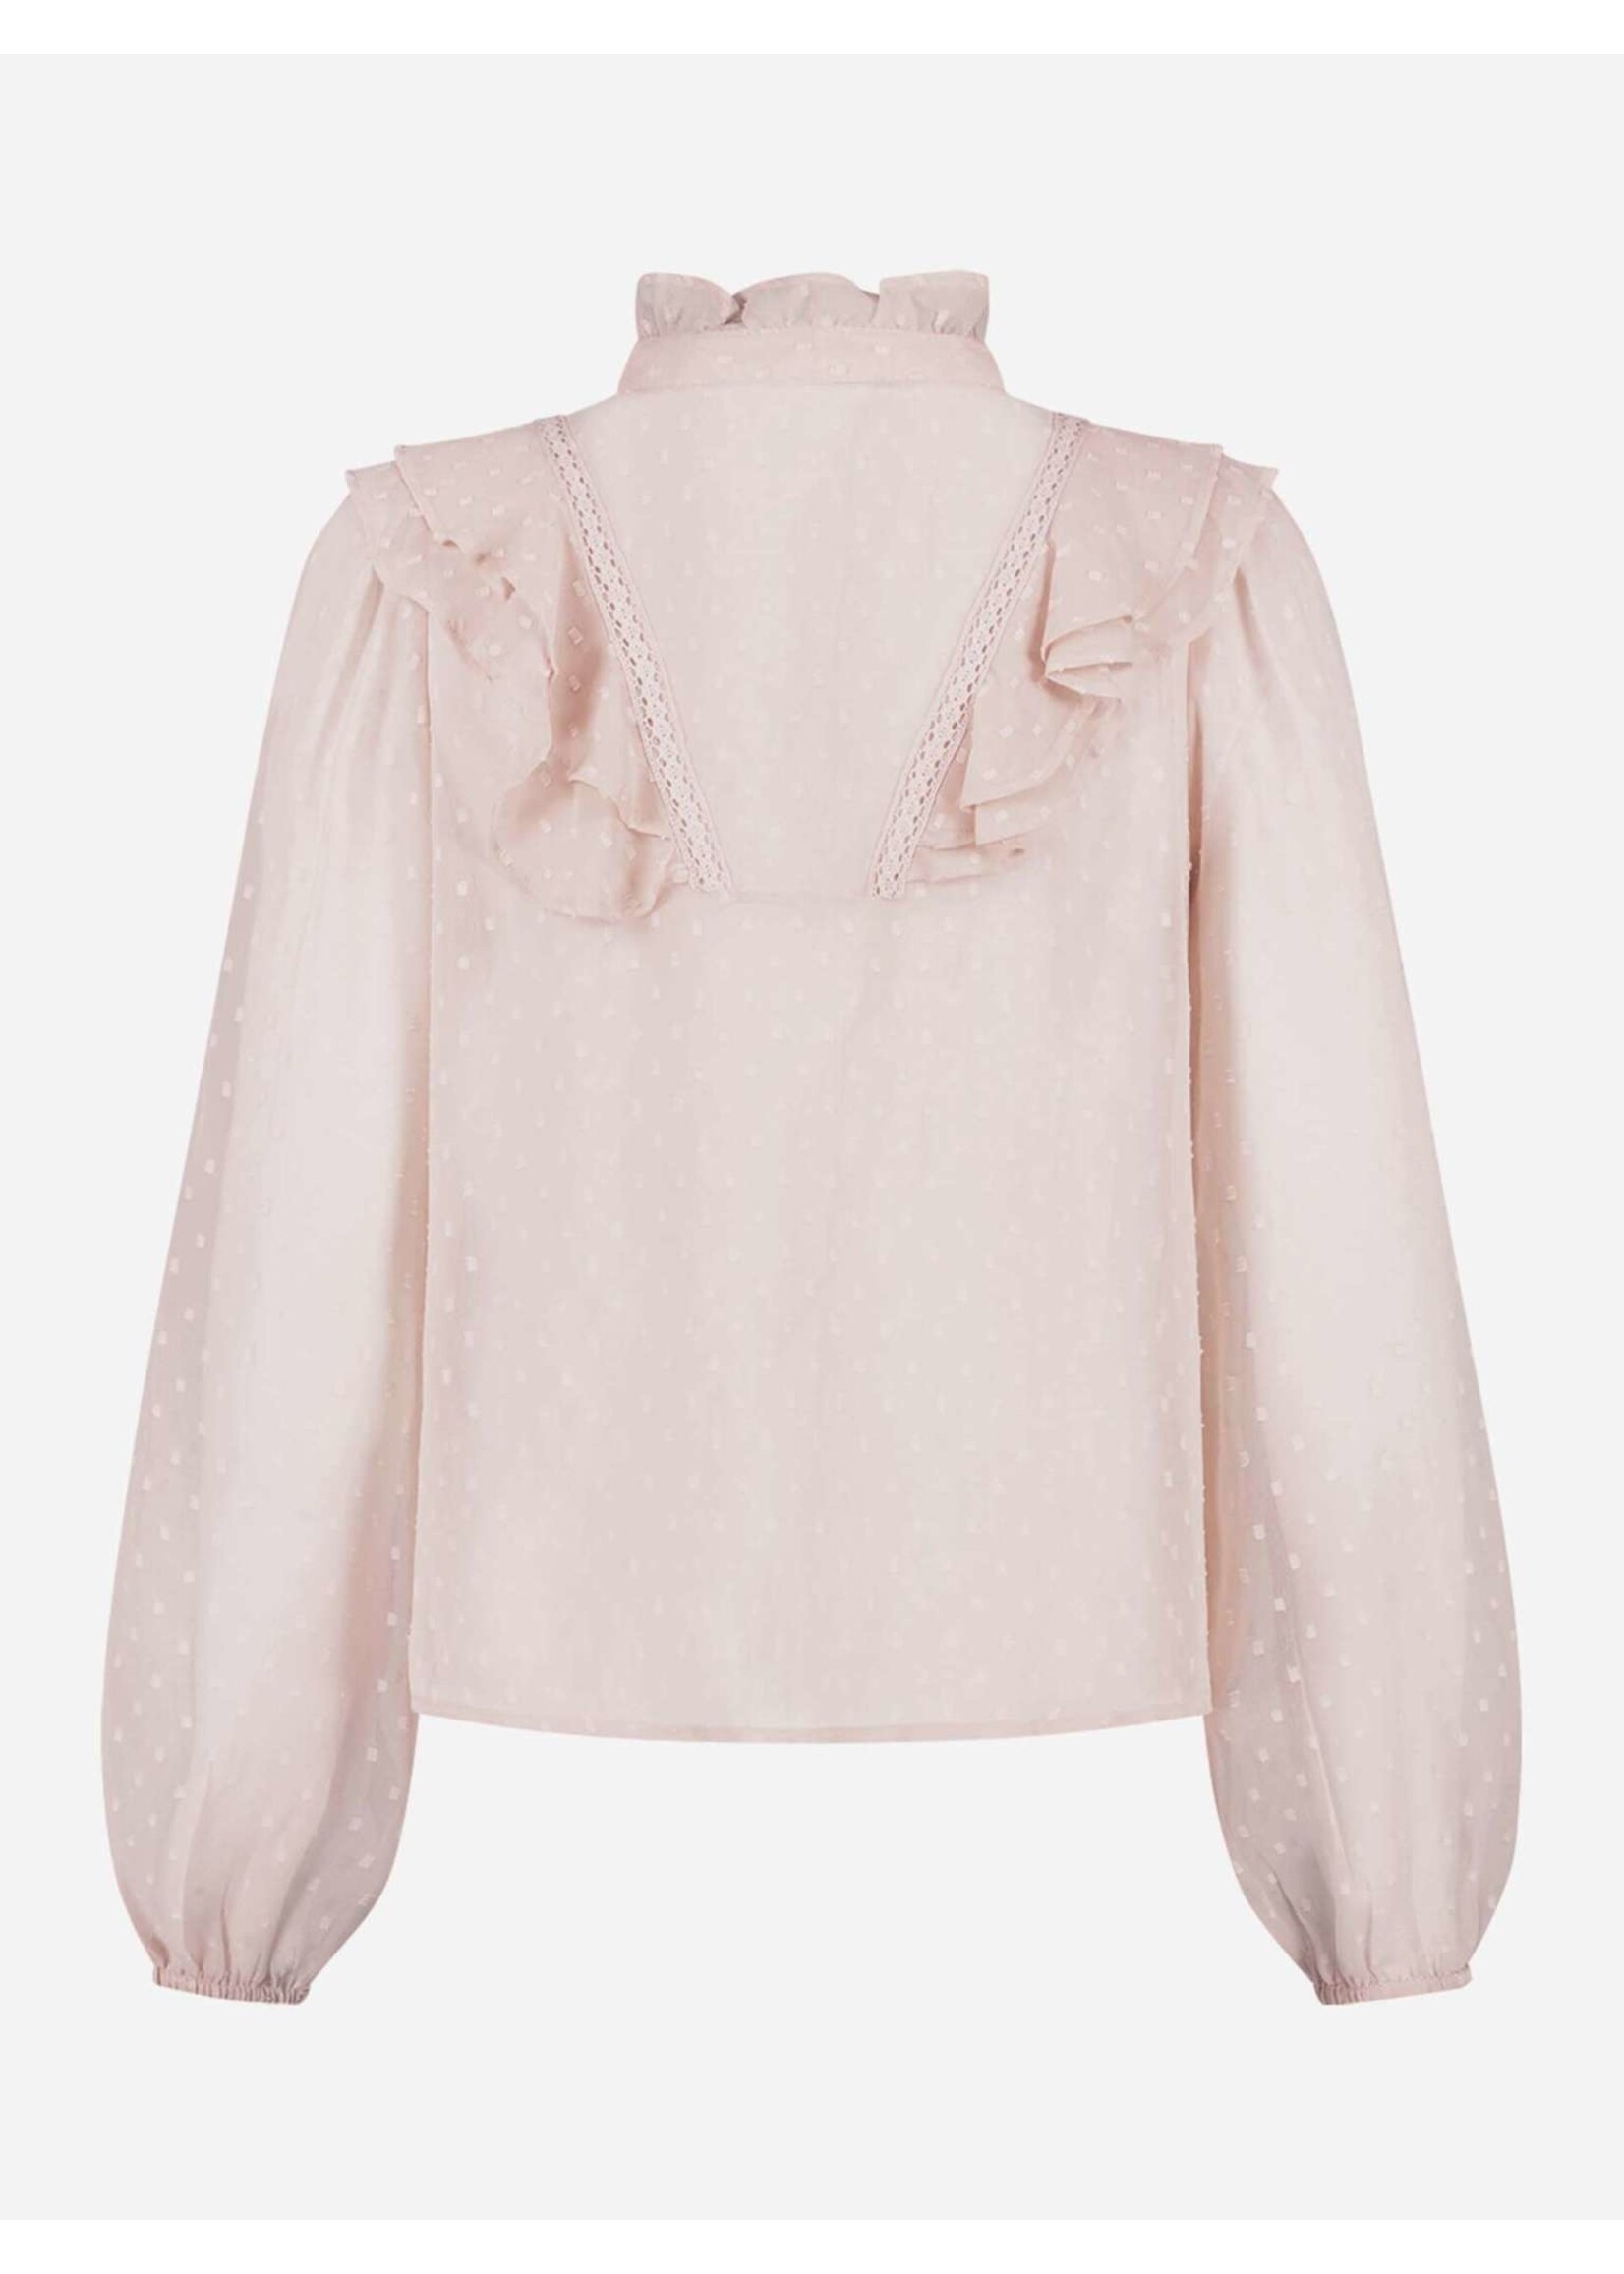 NIKKIE NIKKIE - Verona transparant blouse - Verschillende kleuren verkrijgbaar